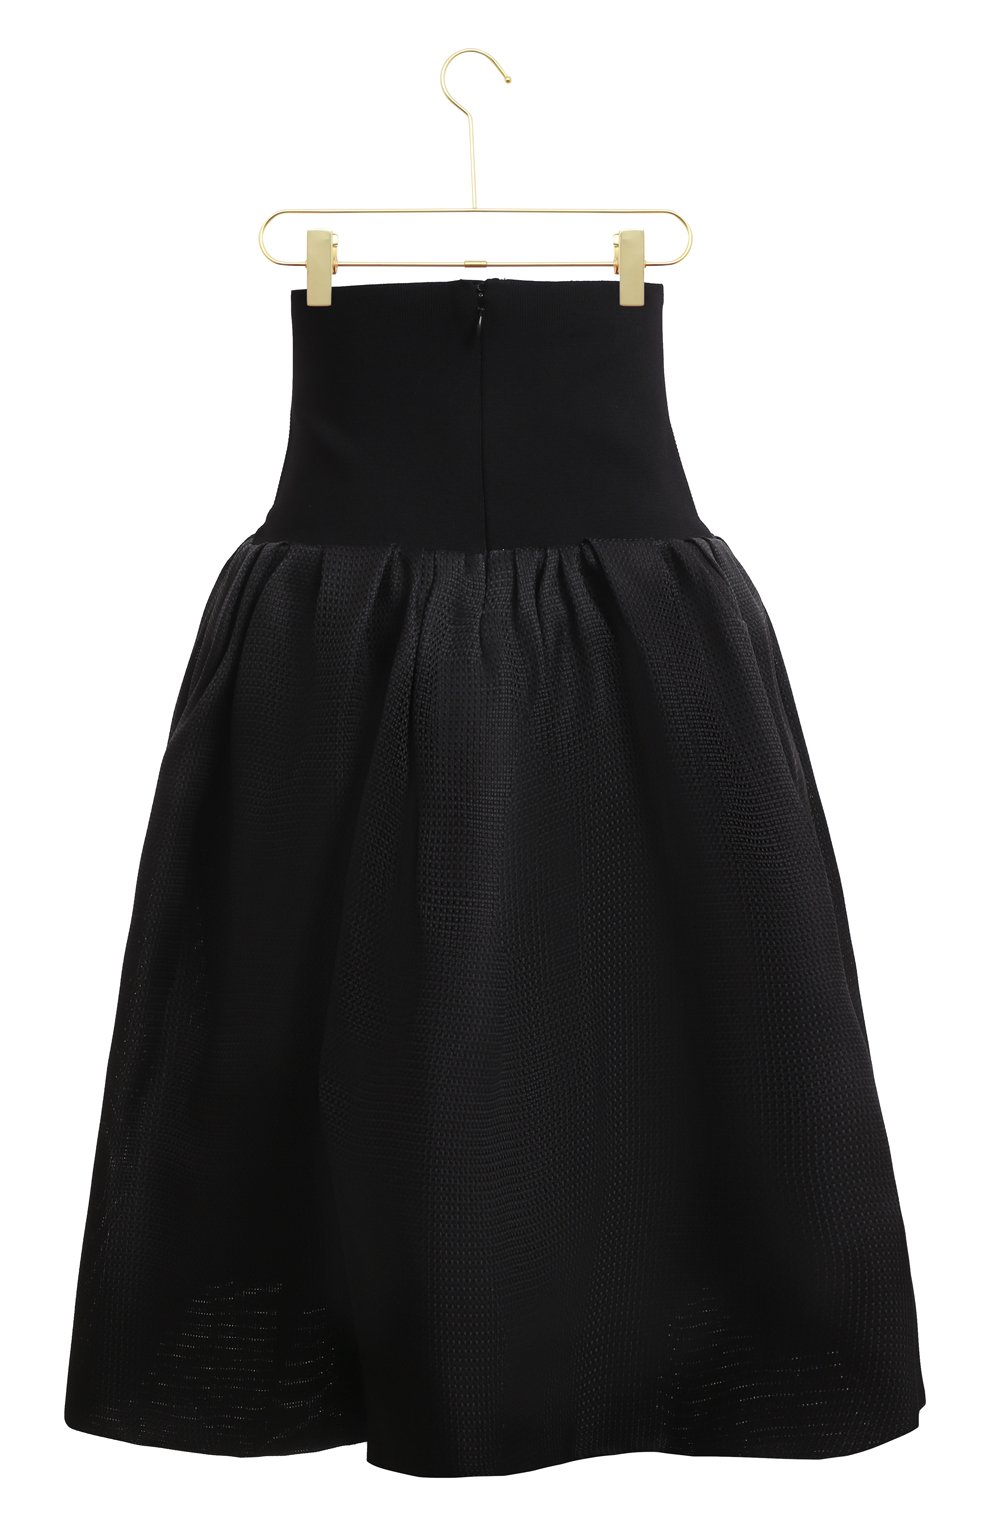 Шелковая юбка | Oscar de la Renta | Чёрный - 2